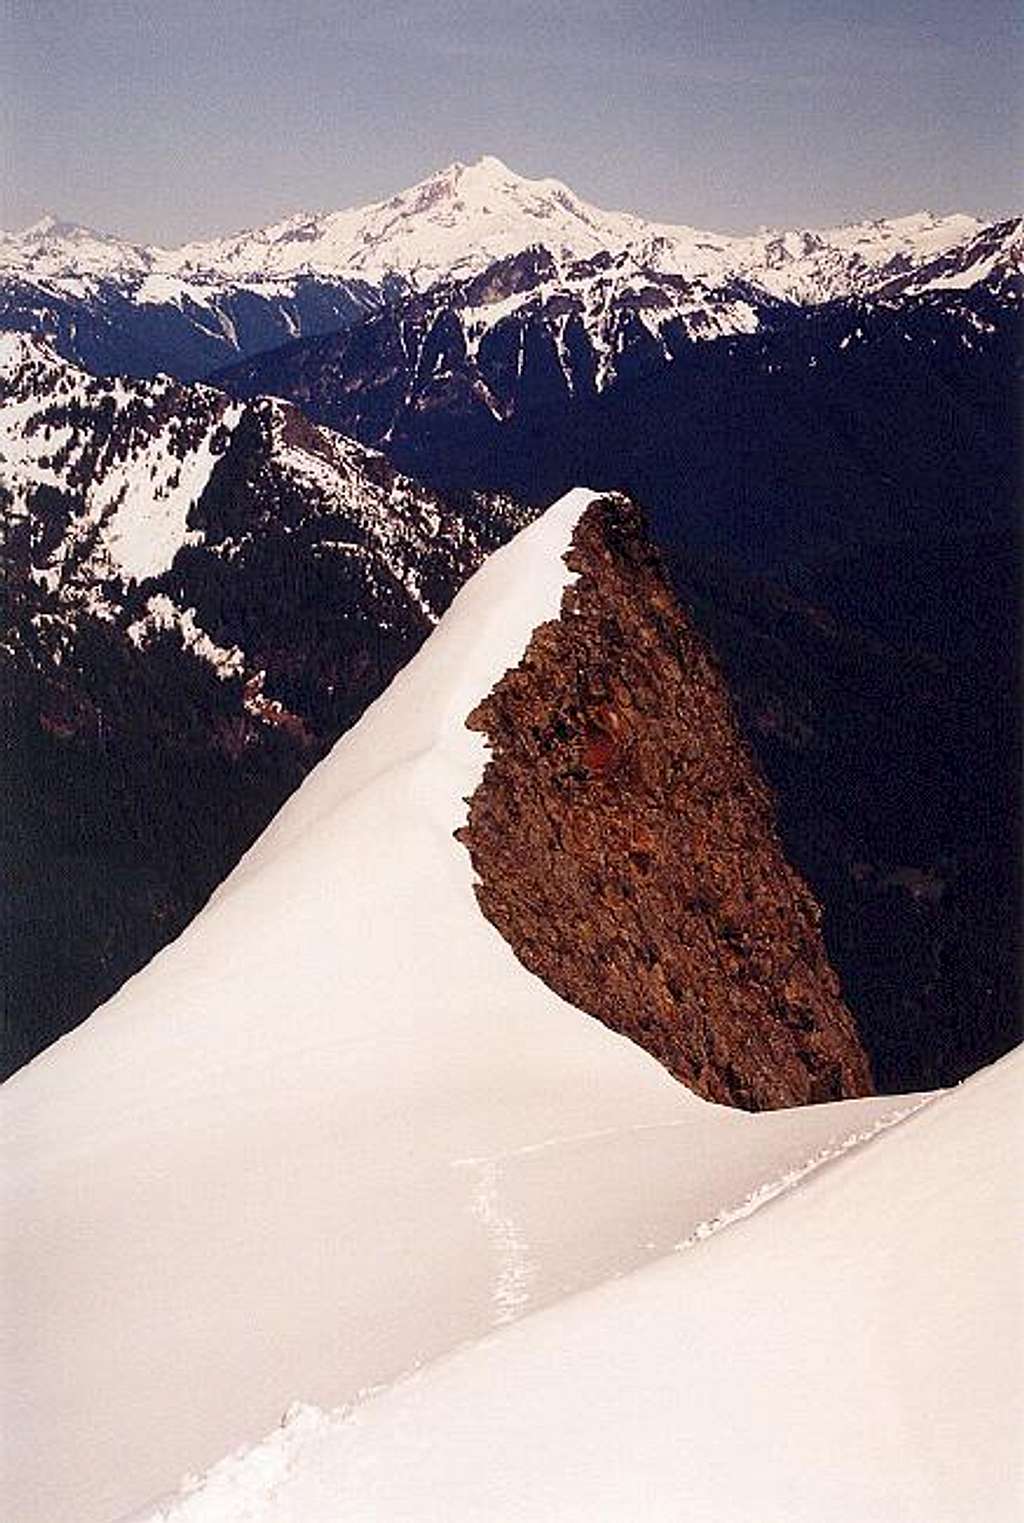 Glacier Peak as viewed from...